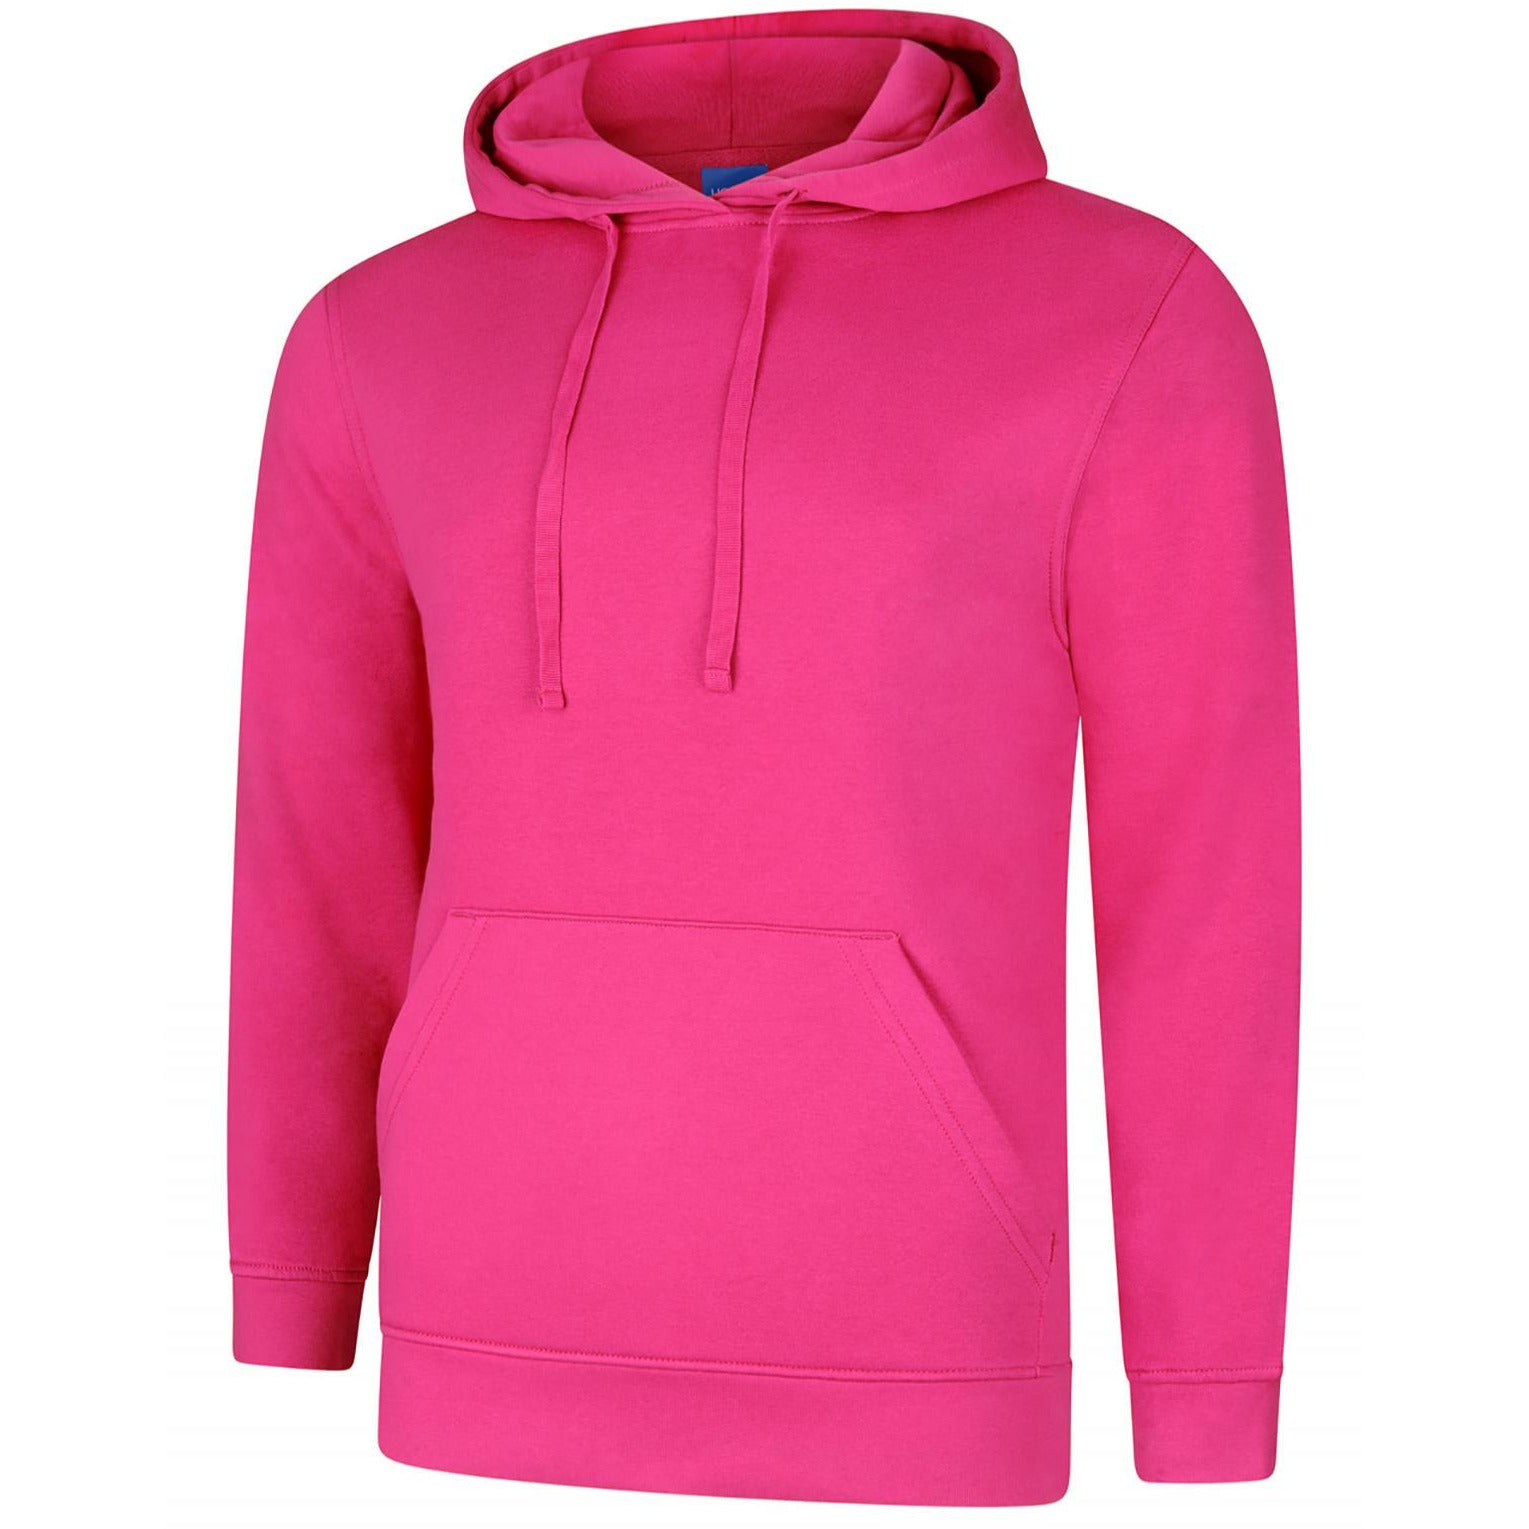 Deluxe Hooded Sweatshirt (L - 2XL) Hot Pink